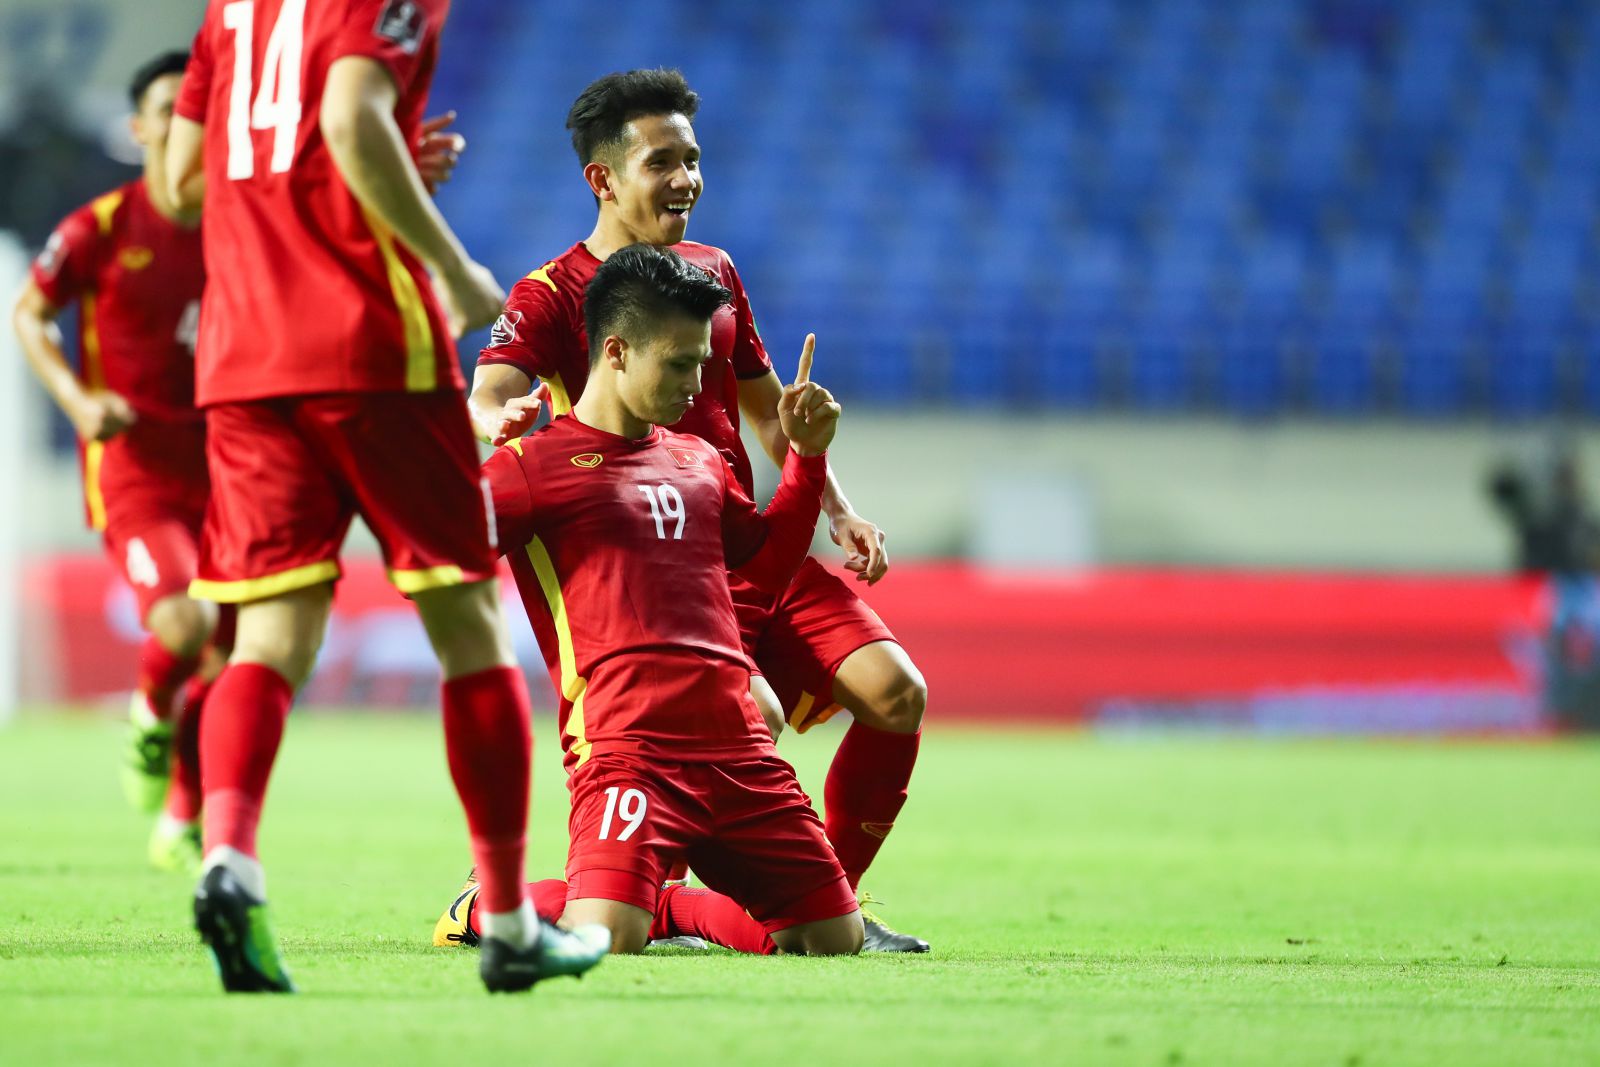 Với nguồn dinh dưỡng vàng từ Vinamilk, Đội tuyển Việt Nam một lần nữa chứng minh thể lực và phong độ vững chắc bằng chiến thắng trước tuyển Indonesia. 